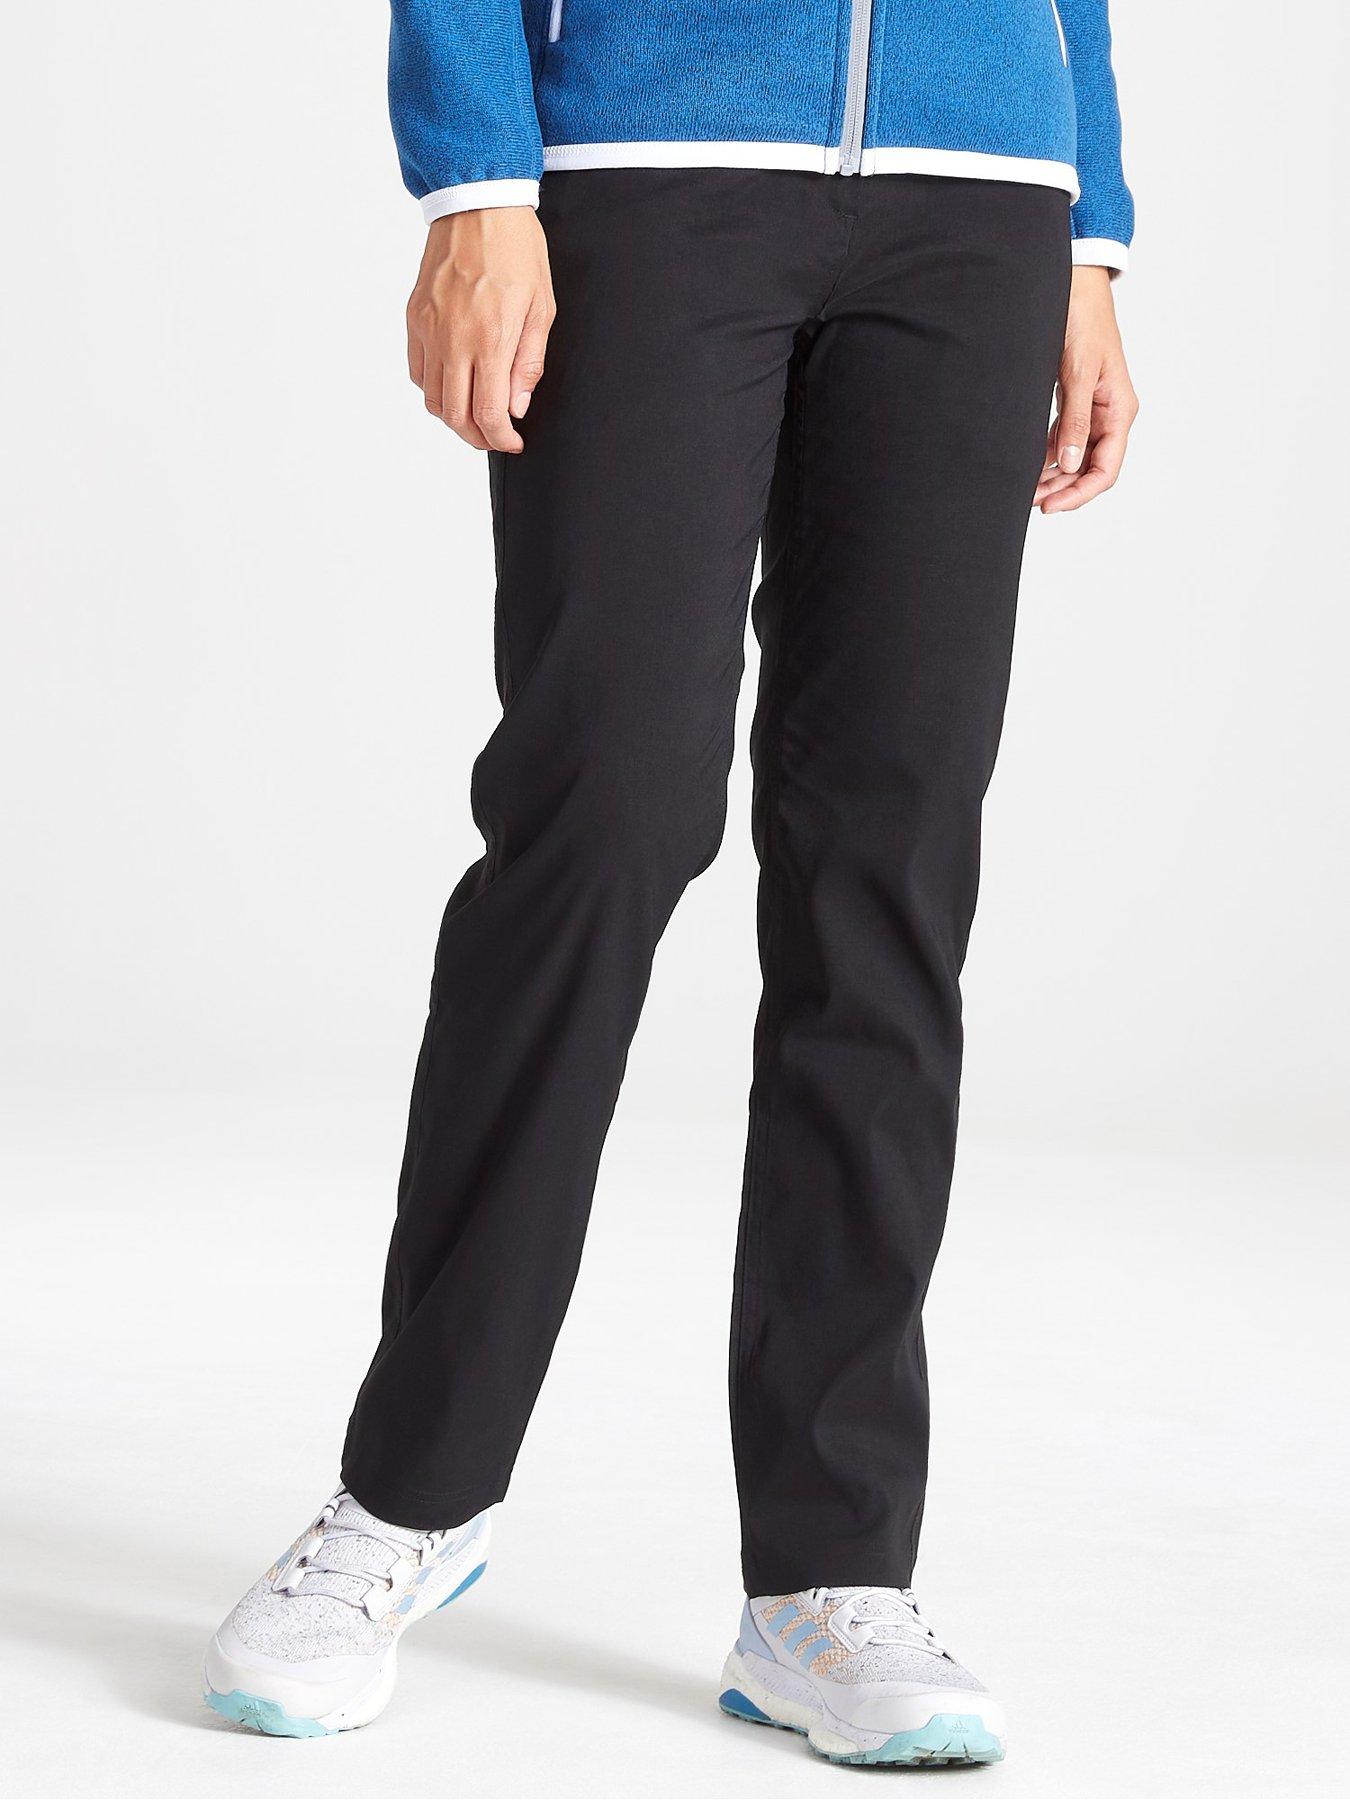 Sportswear Kiwi Pro Ii Trousers Long Length - Black